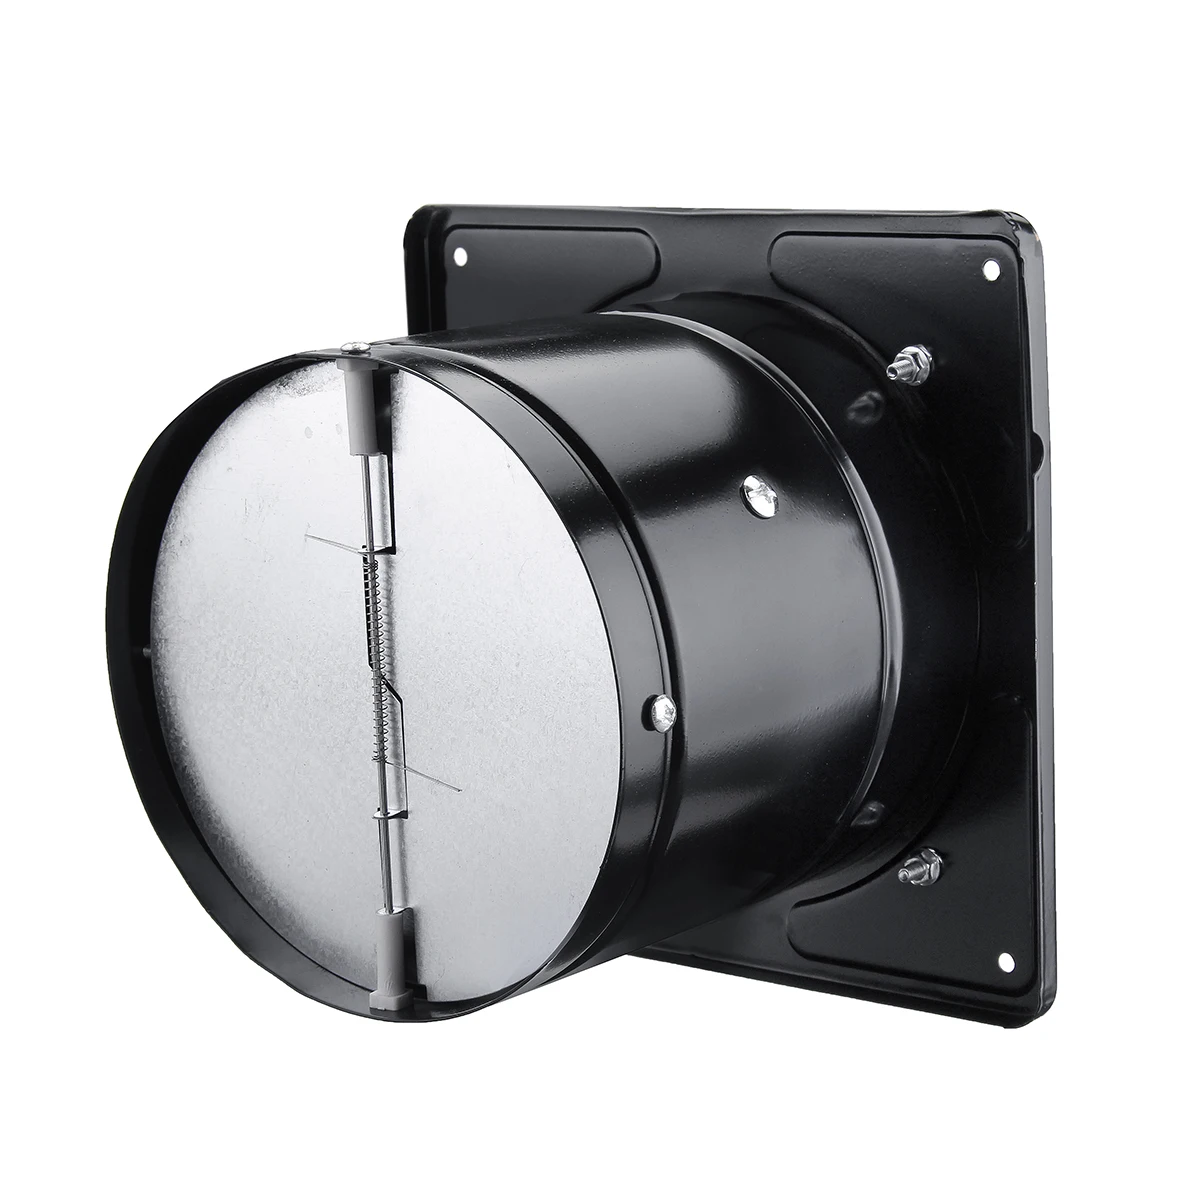 Воздуховод вытяжной вентилятор 220 В 6 дюймов потолочный оконный усилитель вентилятор для ванной комнаты вентиляционная труба вентилятор вытяжной кухонный вентилятор воздушный охладитель вентиляционное отверстие